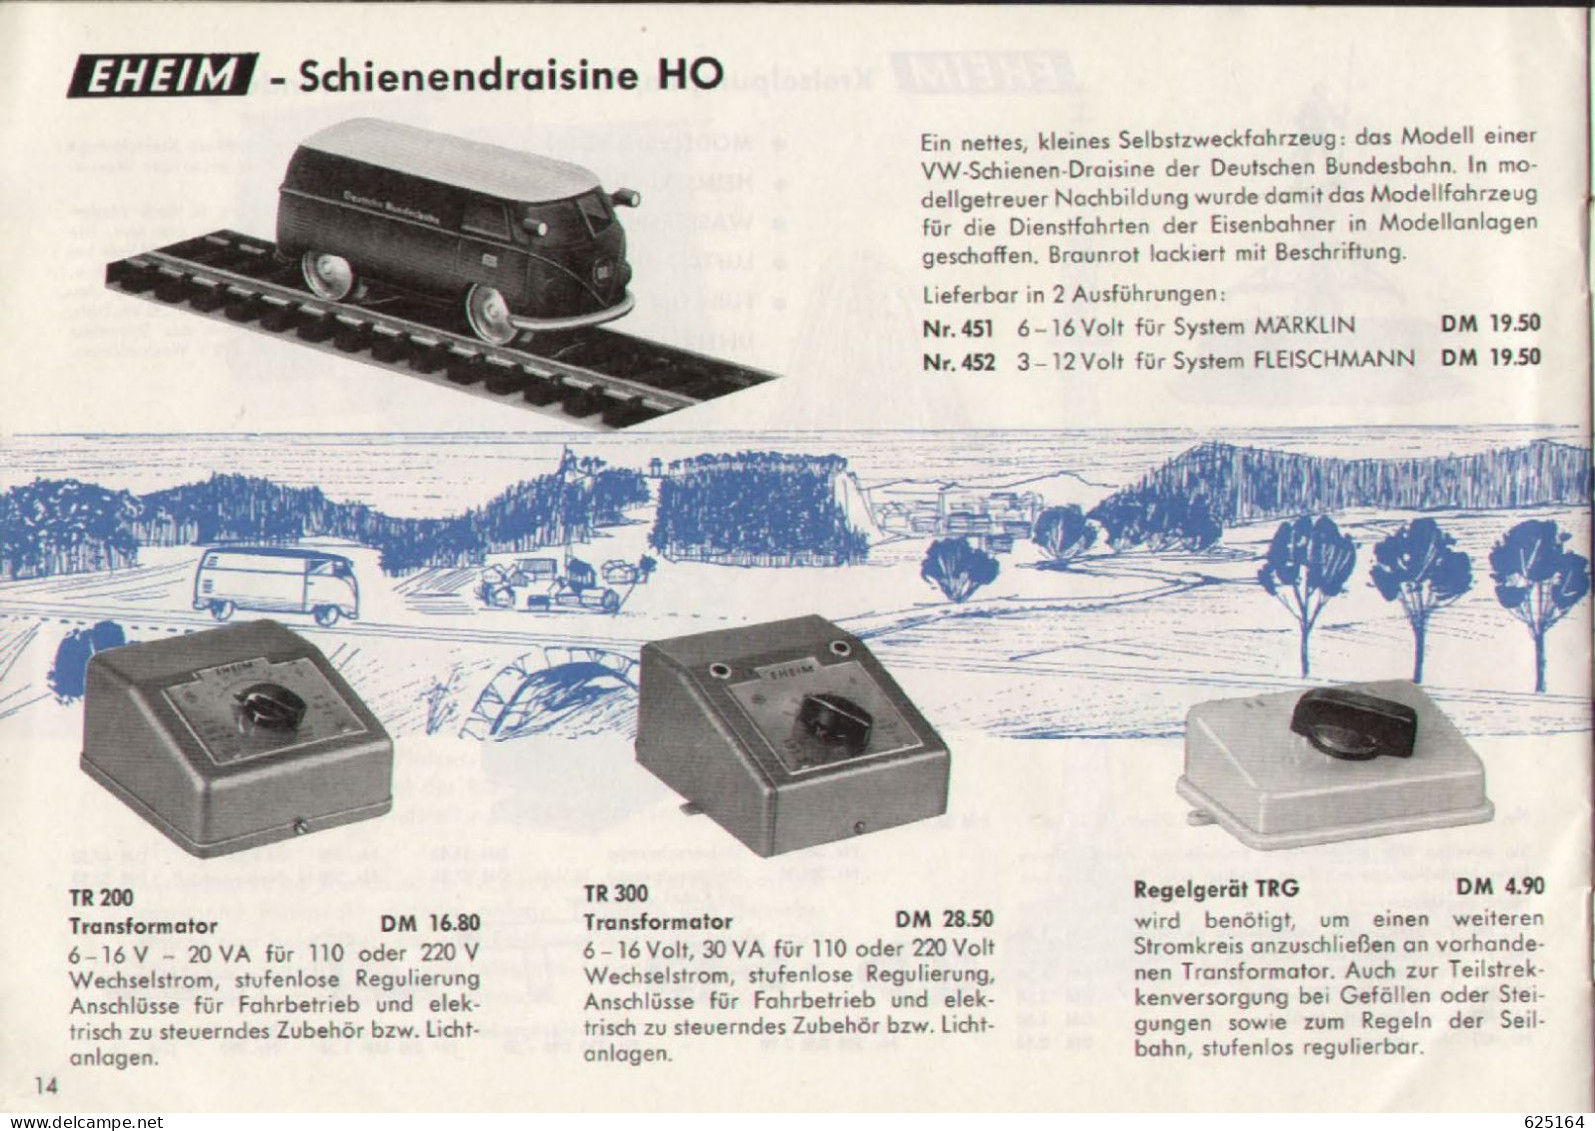 Catalogue EHEIM 1964/65 HO TROLLEY-BUS - Schwebebahn - Schienendraisine - German